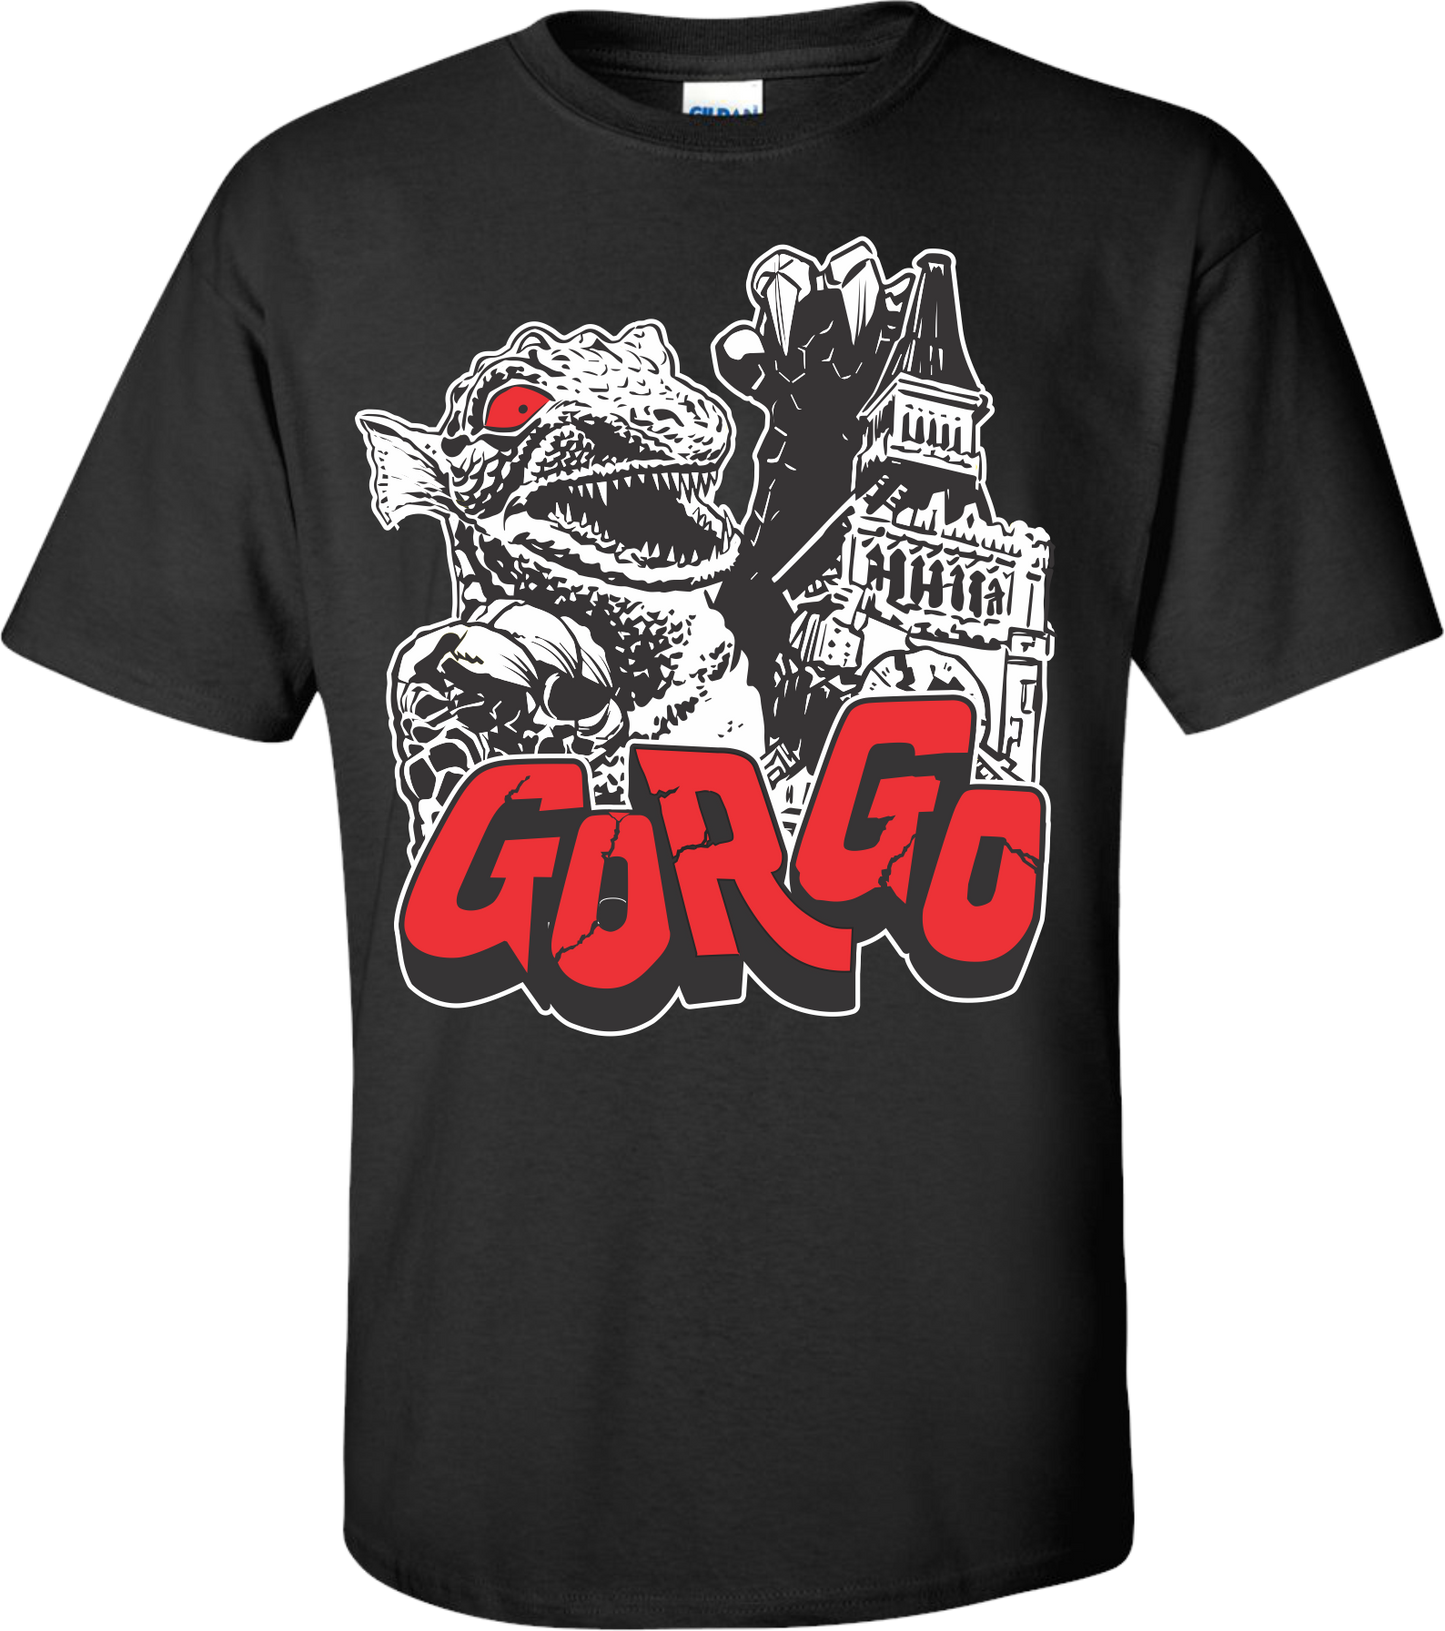 Gorgo Fan Tee - Giant Monster Movie